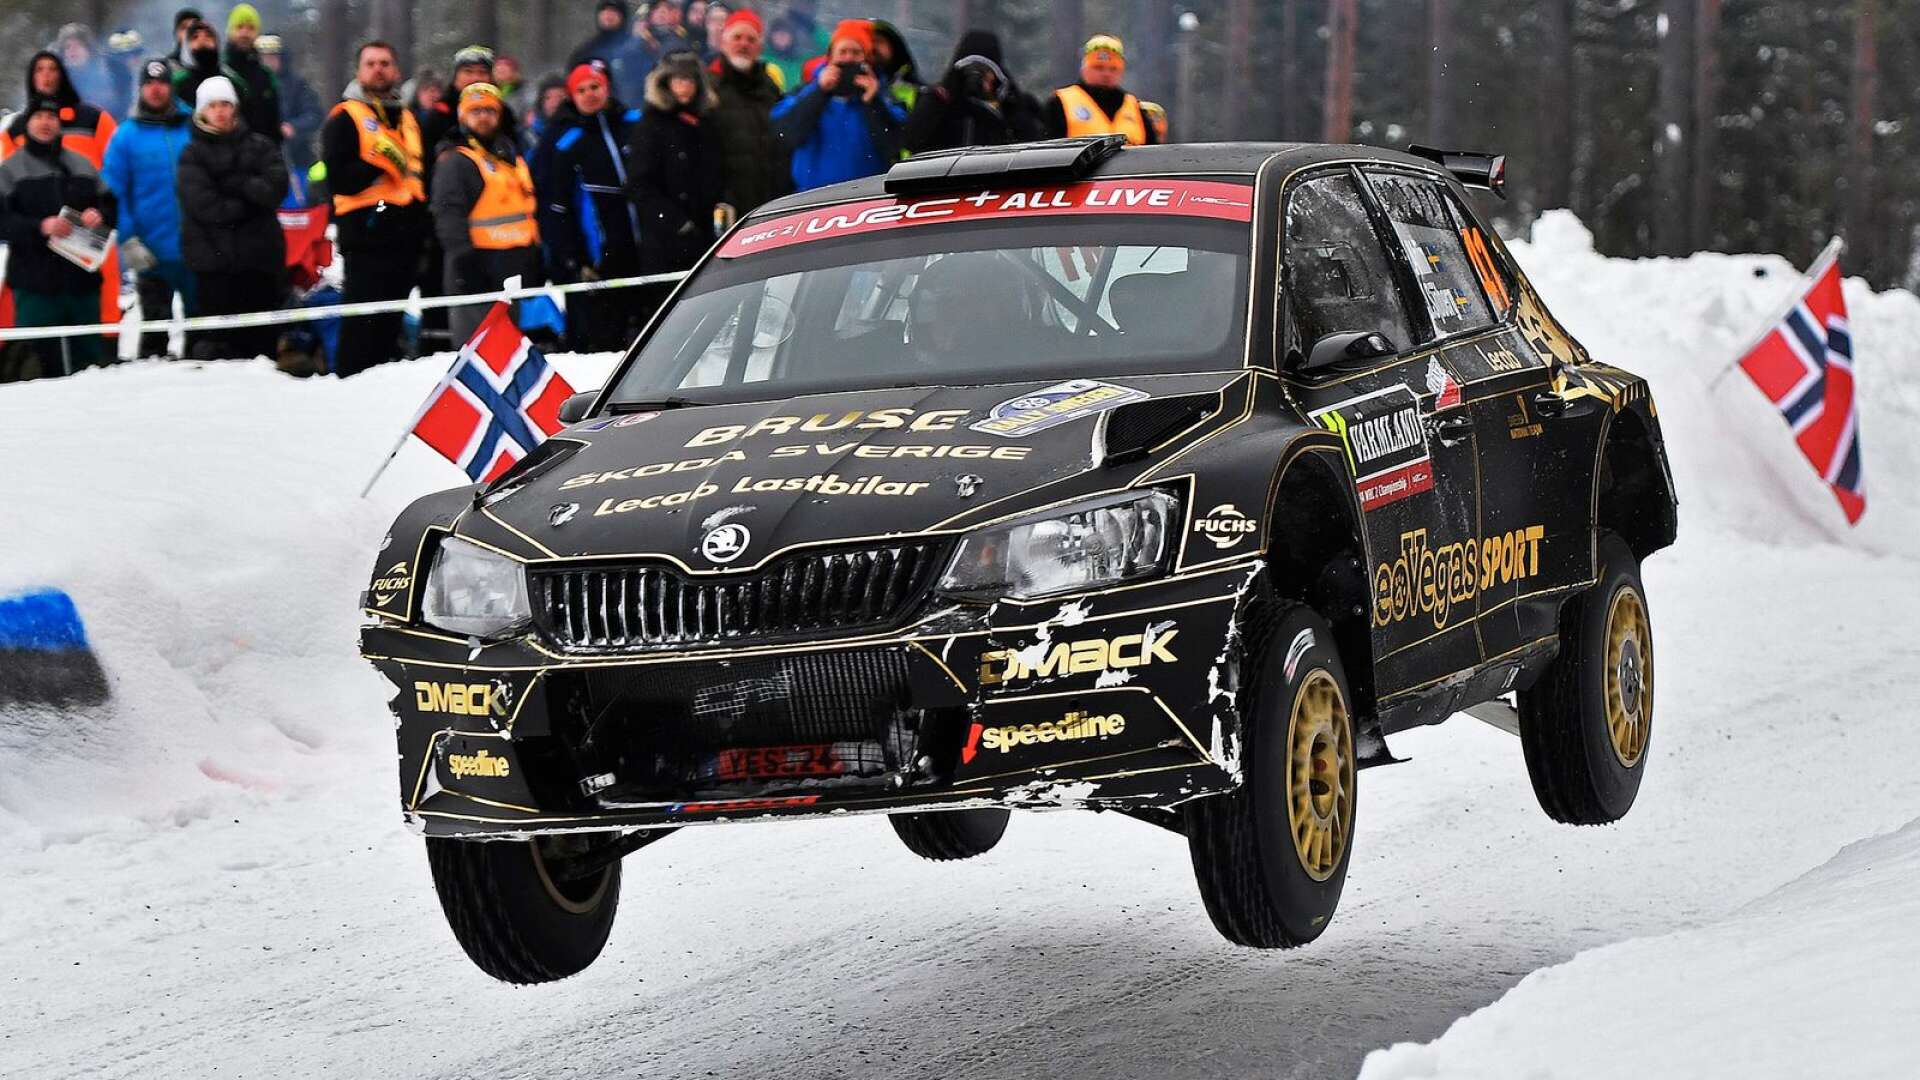 Fredrik Åhlin gör inte något nytt försök i Svenska rallyt i år utan siktar på att få ihop en satsning för att köra hela EM-serien.